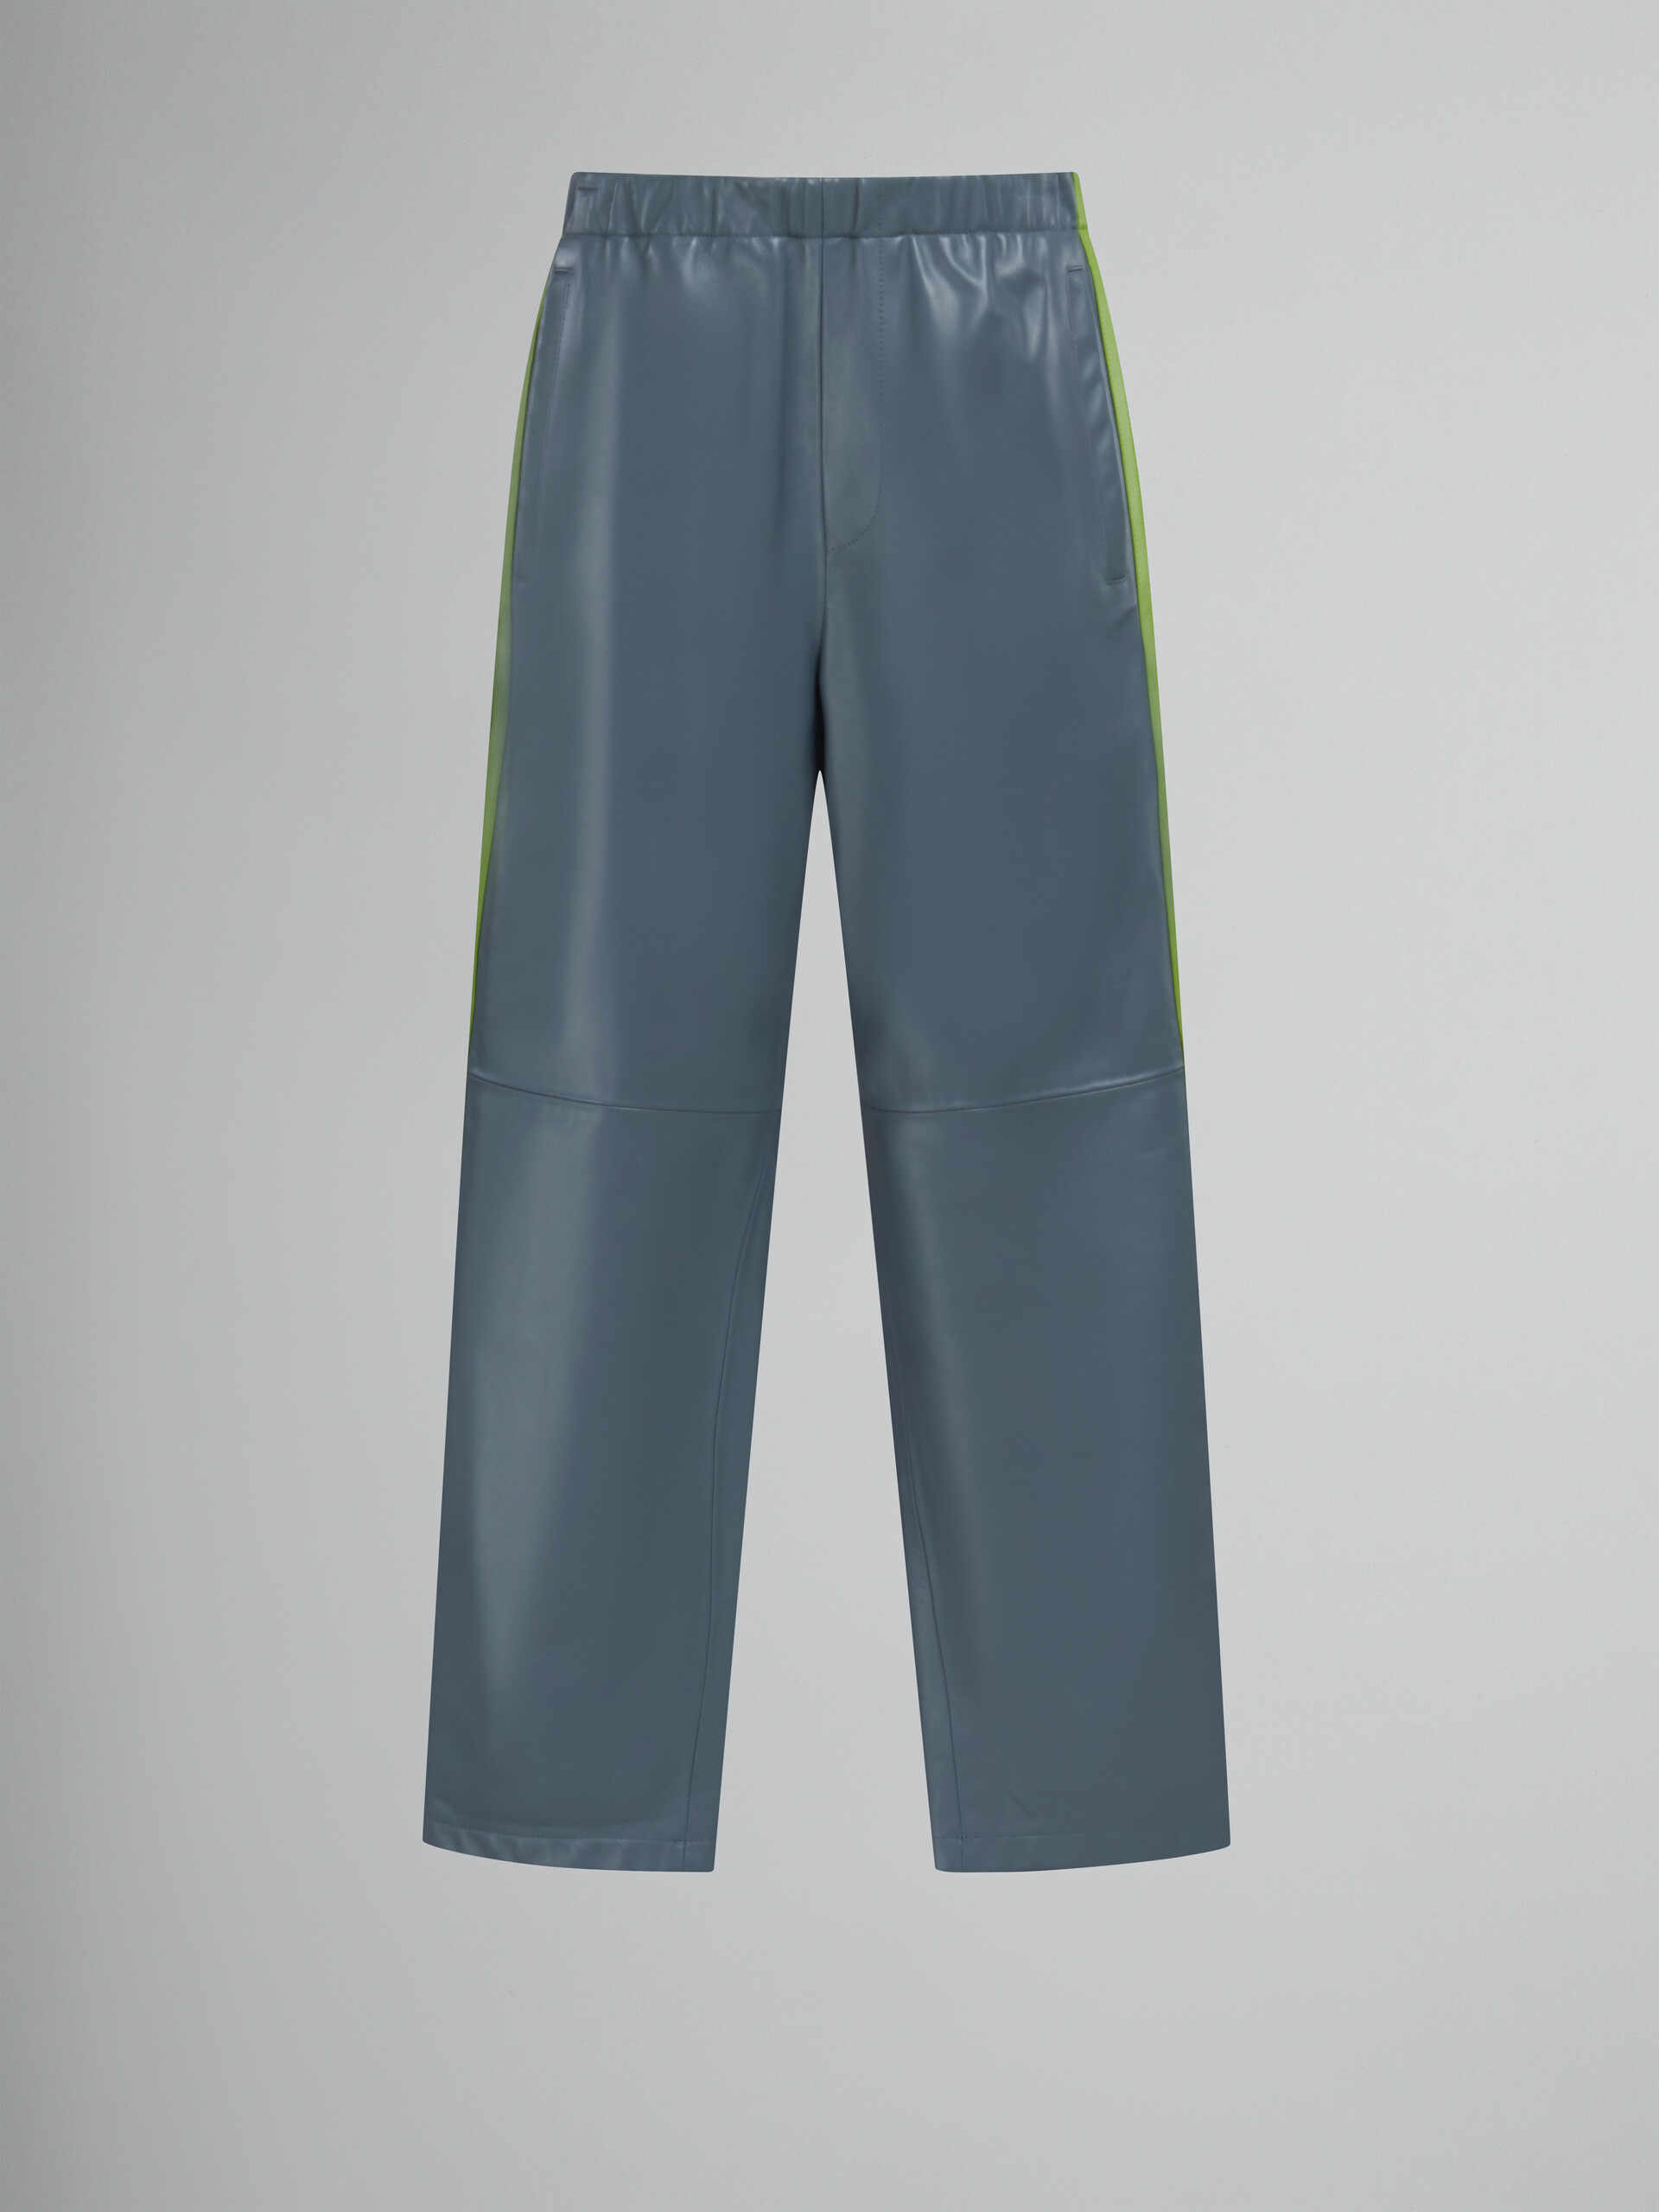 Pantalon de survêtement en cuir nappa bleu sarcelle - Pantalons - Image 1